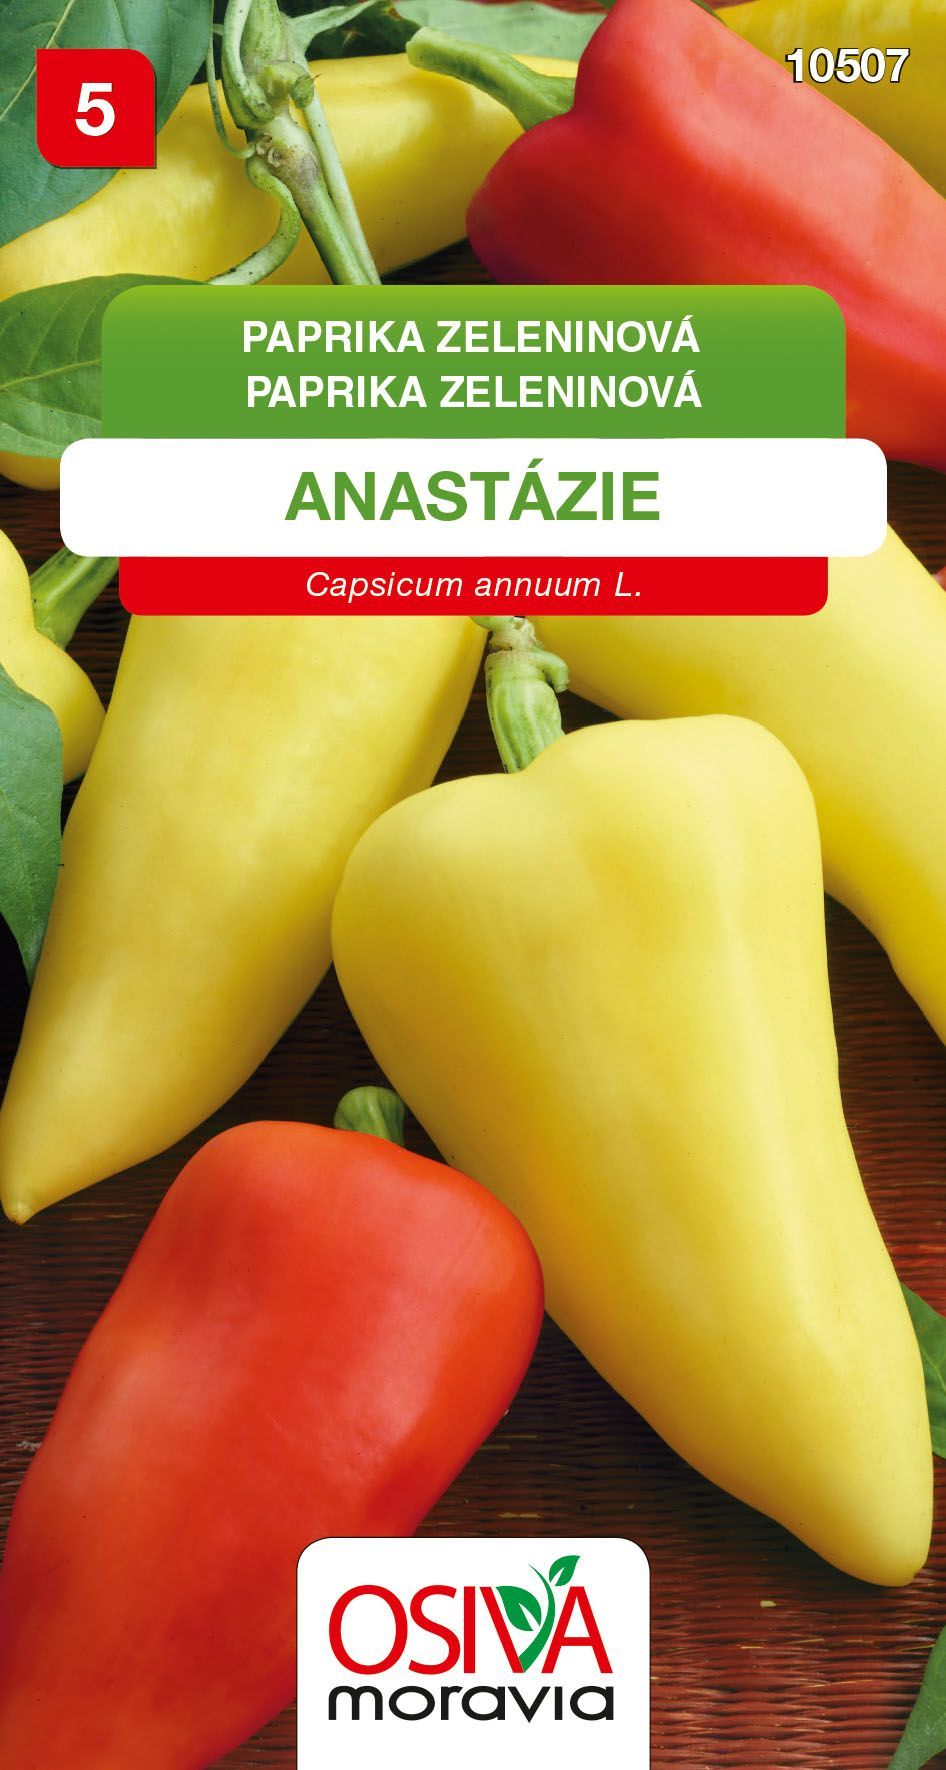 Paprika zeleninová - sladká - Anastazie